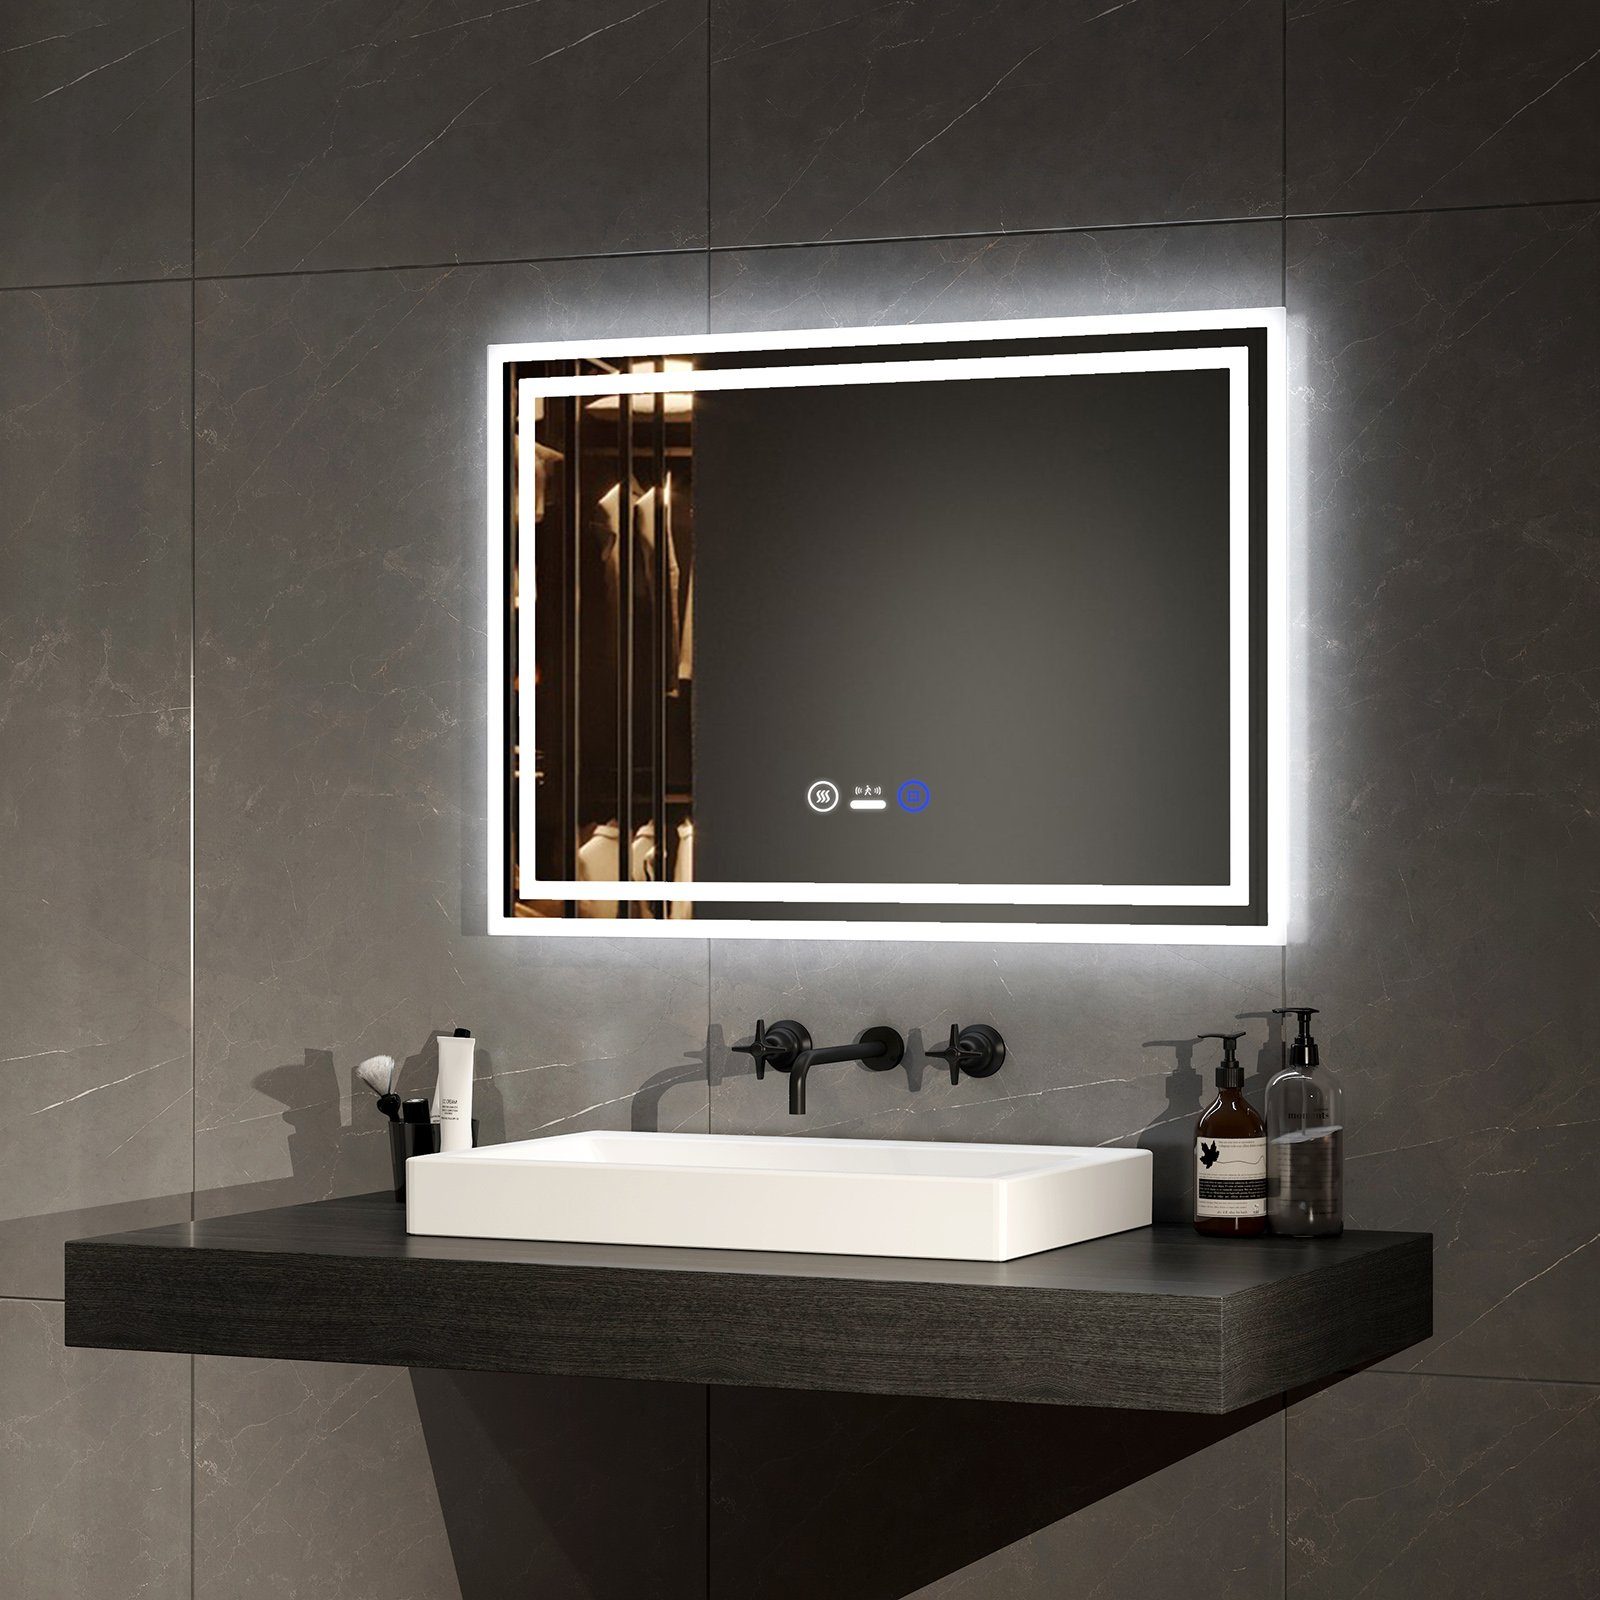 EMKE Badspiegel LED Badspiegel mit Beleuchtung Bewegungssensor Wandspiegel, mit Beschlagfreiheit, Dimmbarem Touch-Schalter und 3 Farben des Lichts